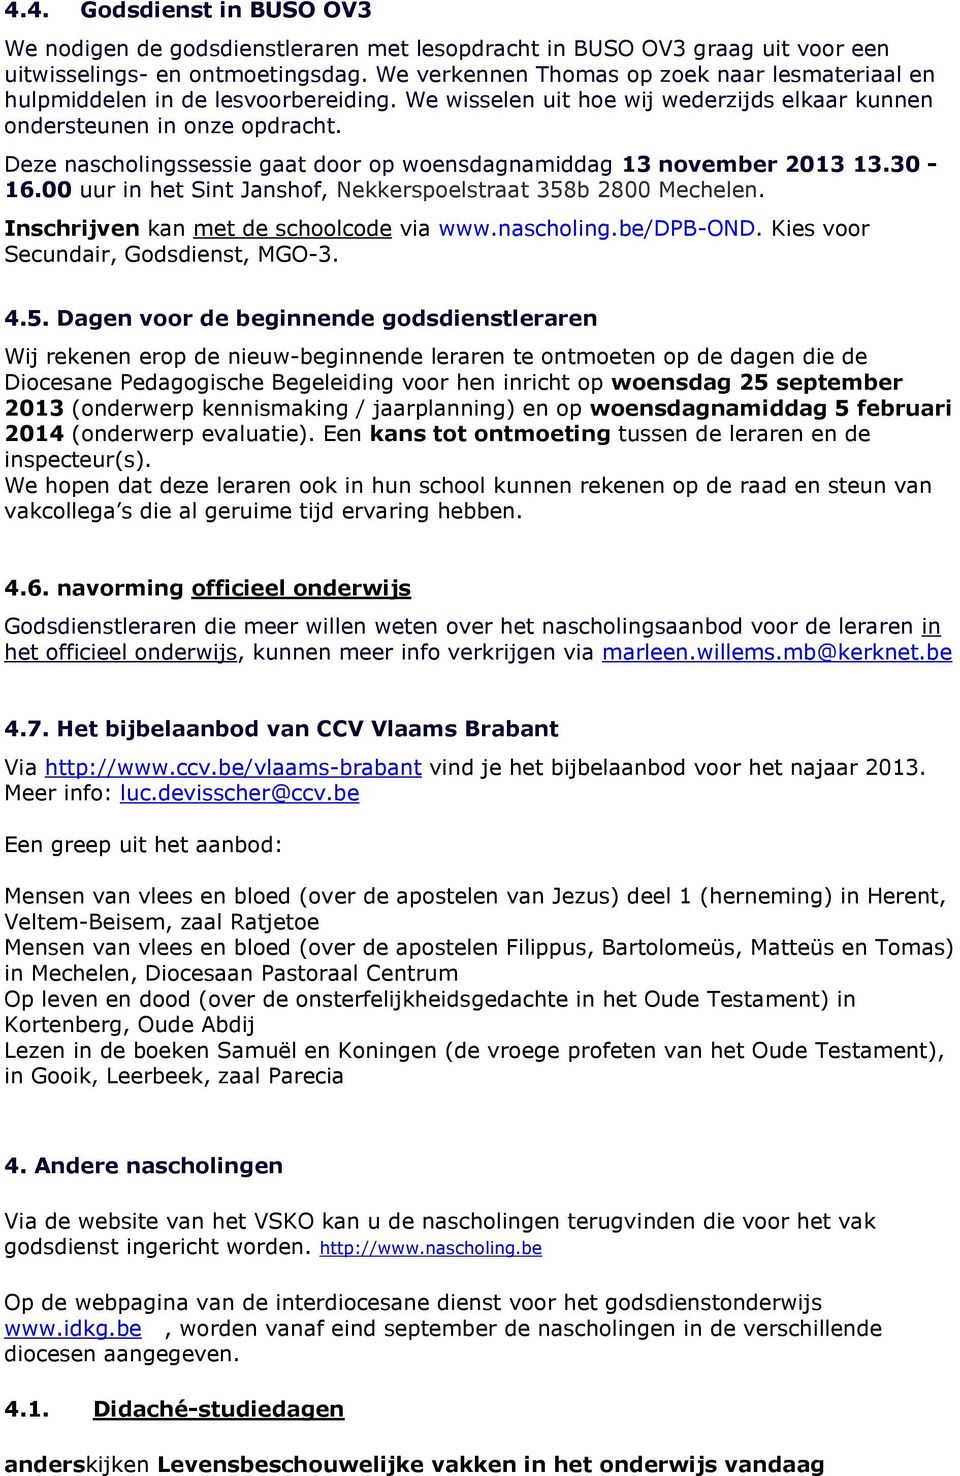 Deze nascholingssessie gaat door op woensdagnamiddag 13 november 2013 13.30-16.00 uur in het Sint Janshof, Nekkerspoelstraat 358b 2800 Mechelen. Inschrijven kan met de schoolcode via www.nascholing.be/dpb-ond.